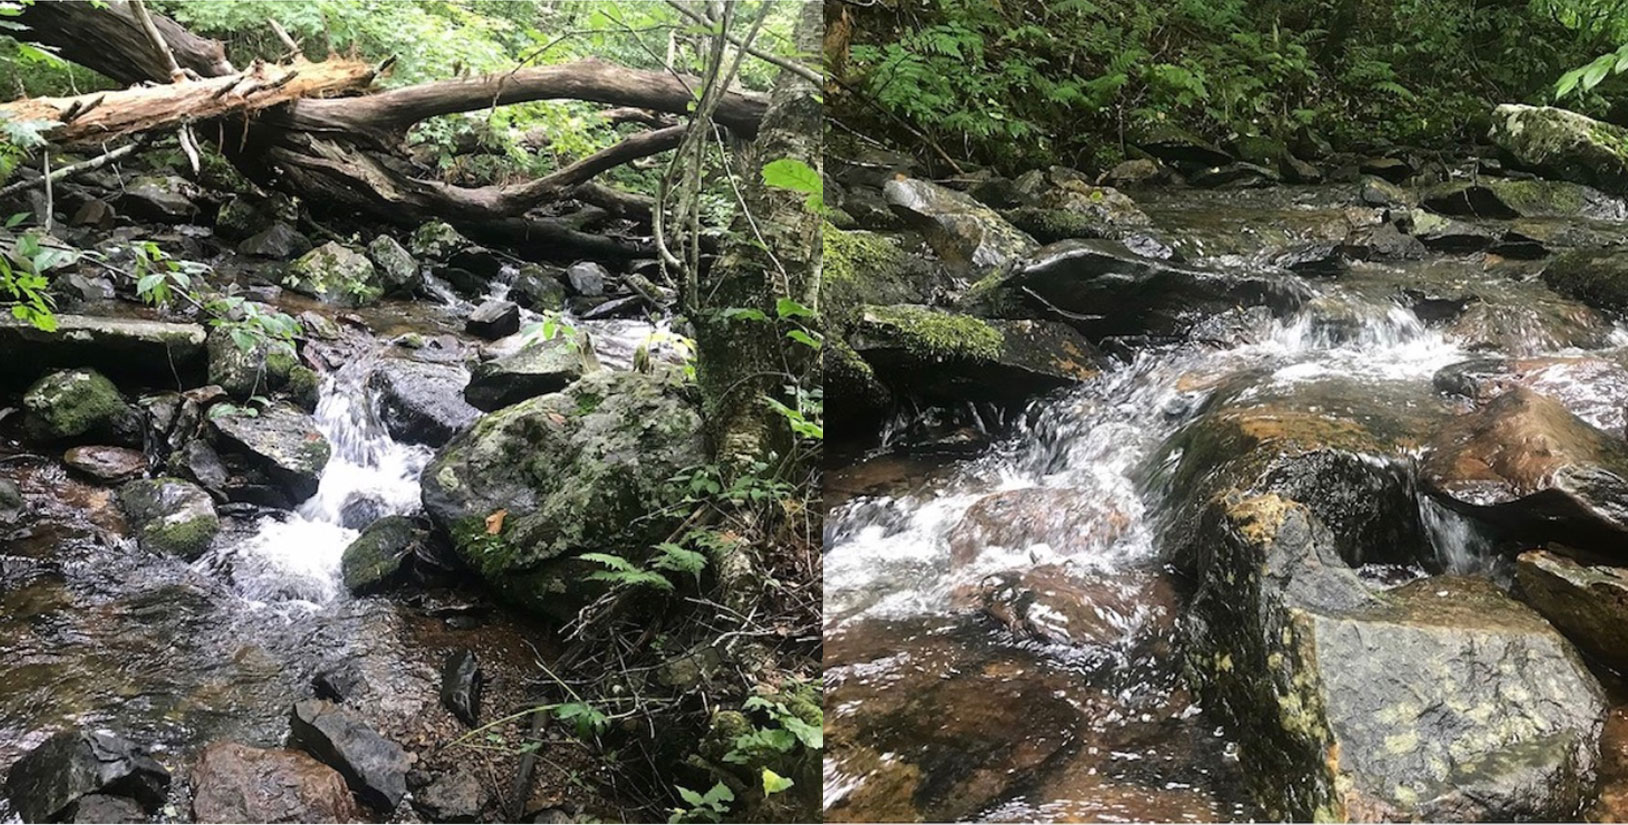 West Virginia trip, bubbling streams